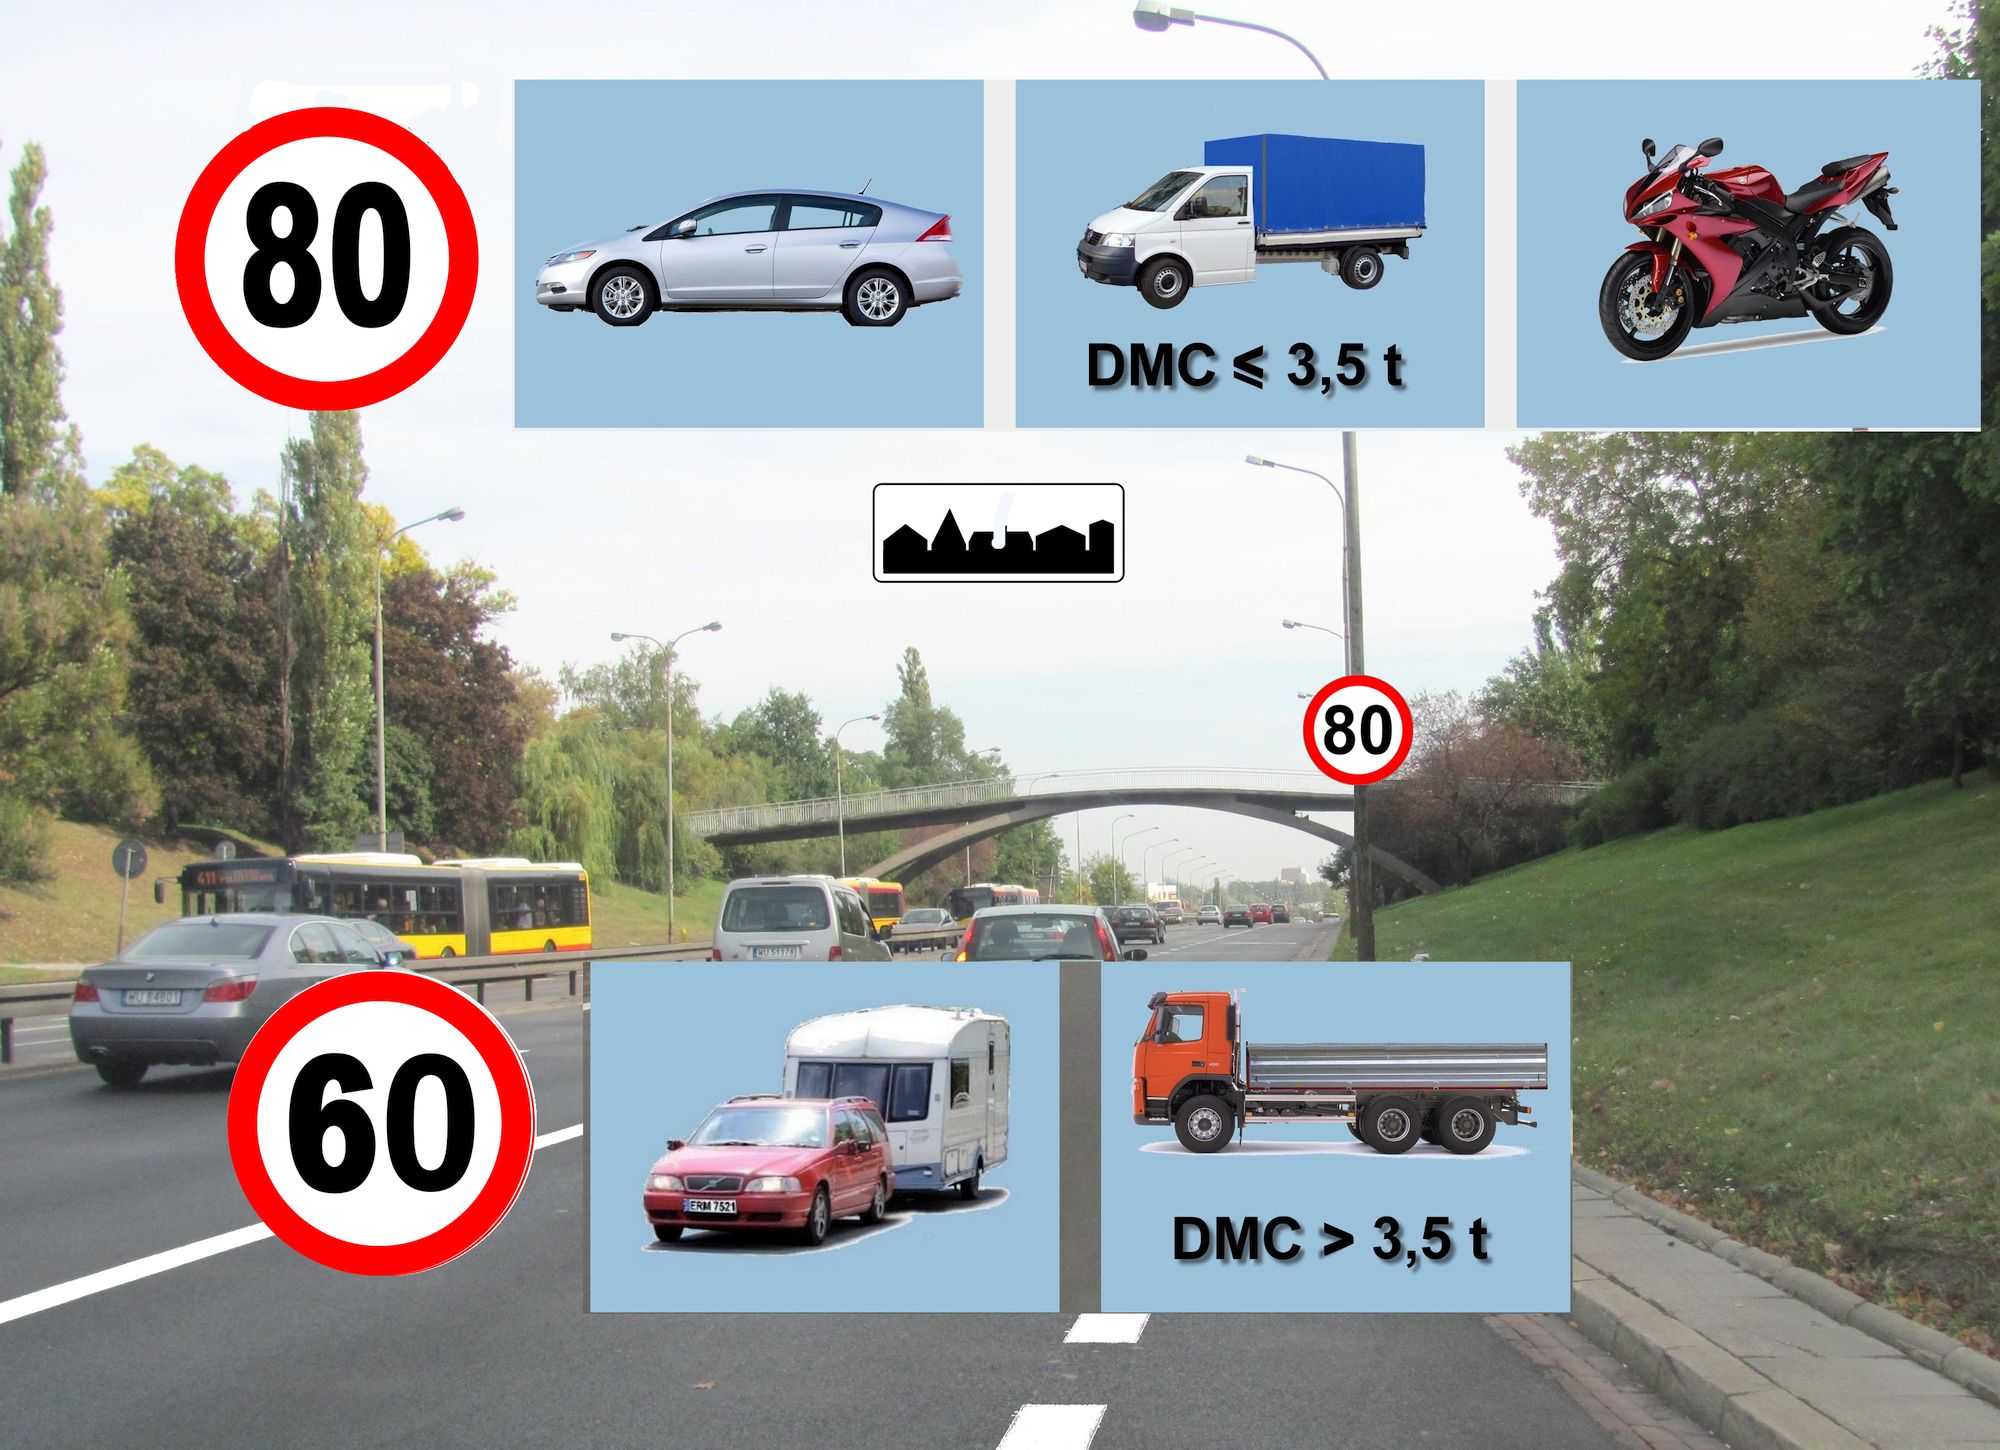 Czy znak podwyższający prędkość w obszarze zabudowanym dotyczy wszystkich uczestników ruchu drogowego, czy może część pojazdów jest z tego przepisu zezwalającego na poruszanie się z wyższą prędkością wyłączona?